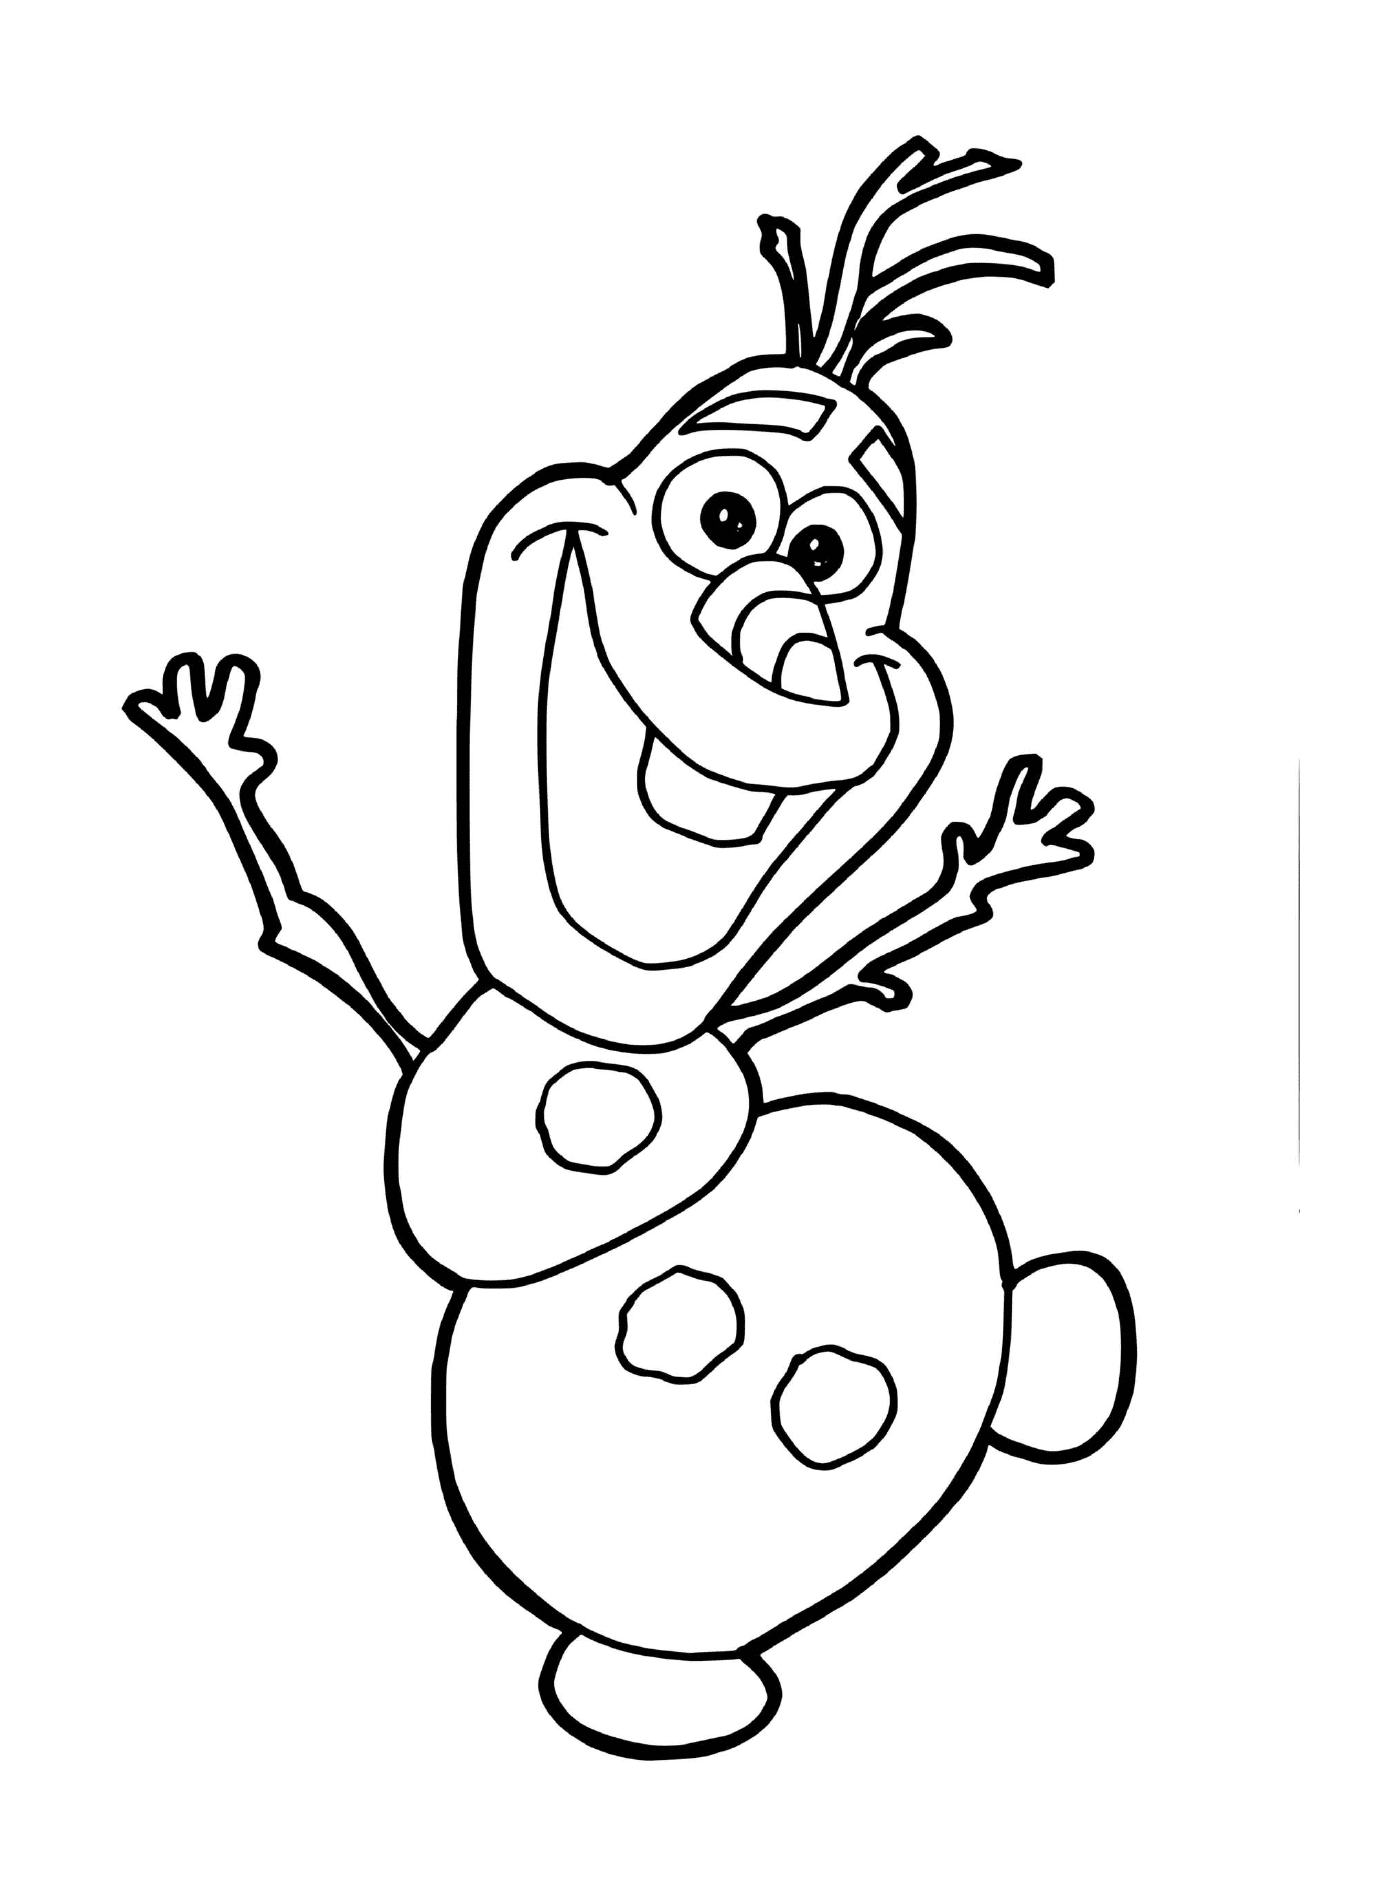  Olaf, der Schneemann der Schneekönigin 